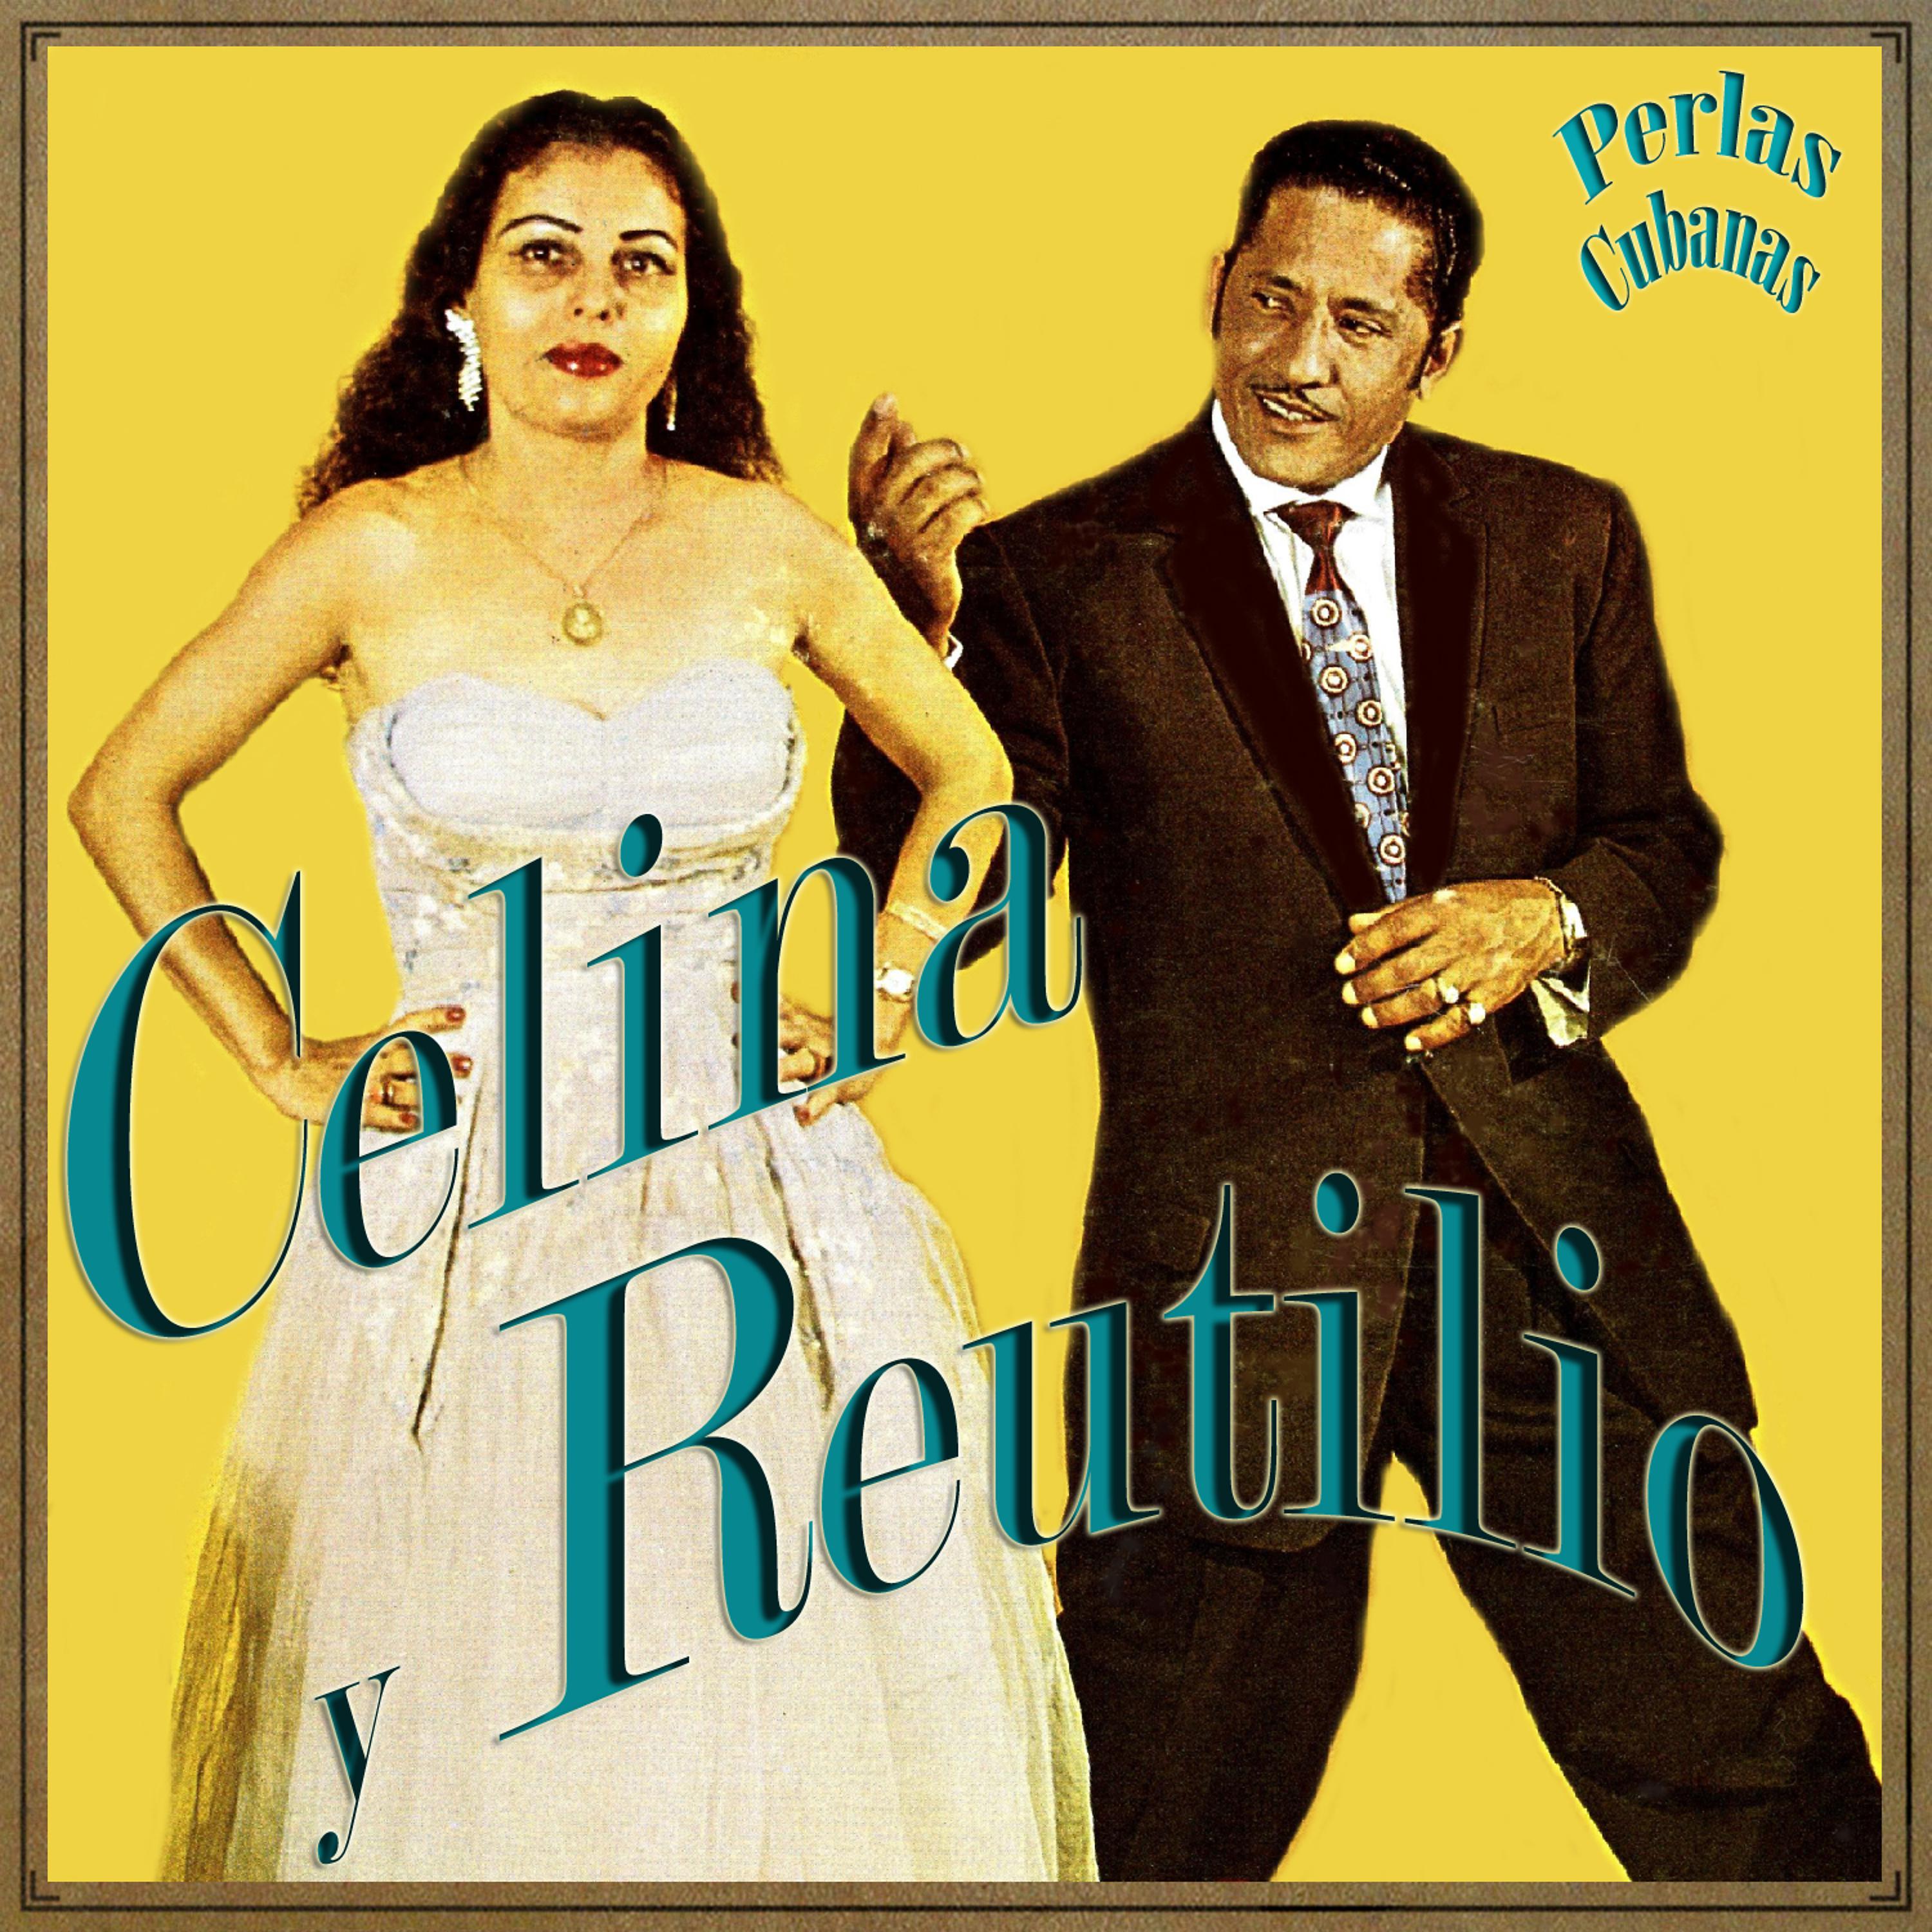 Постер альбома Perlas Cubanas: Celina y Reutilio